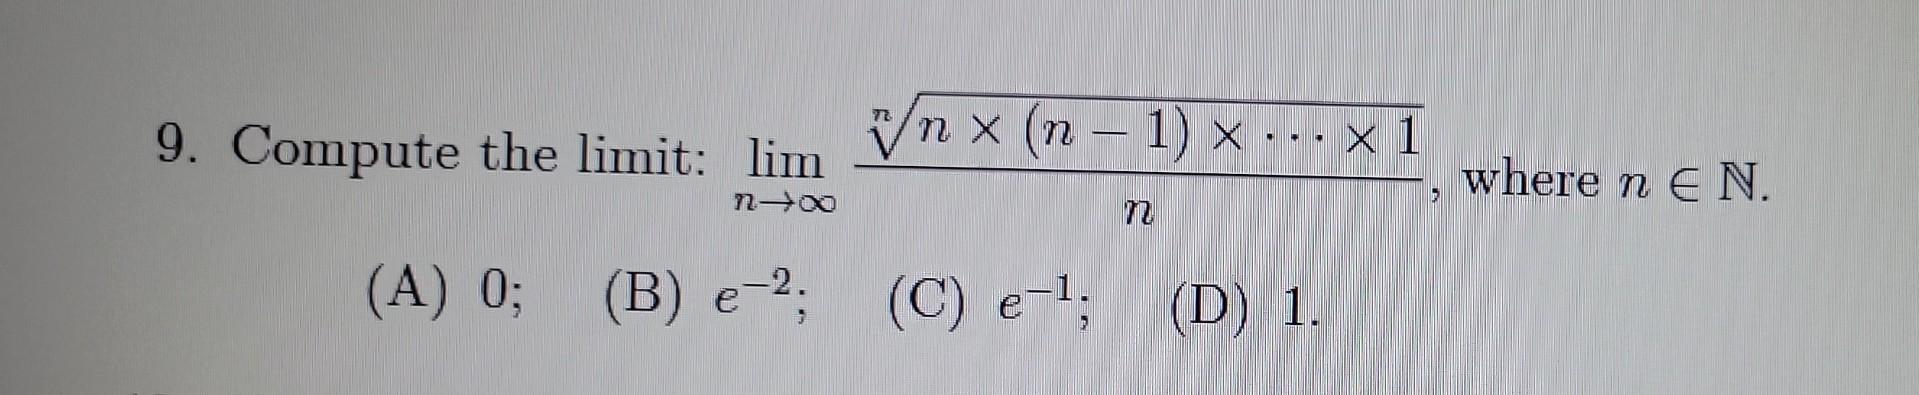 9. Compute the limit: ( lim _{n rightarrow infty} frac{sqrt[n]{n times(n-1) times cdots times 1}}{n} ), where ( n